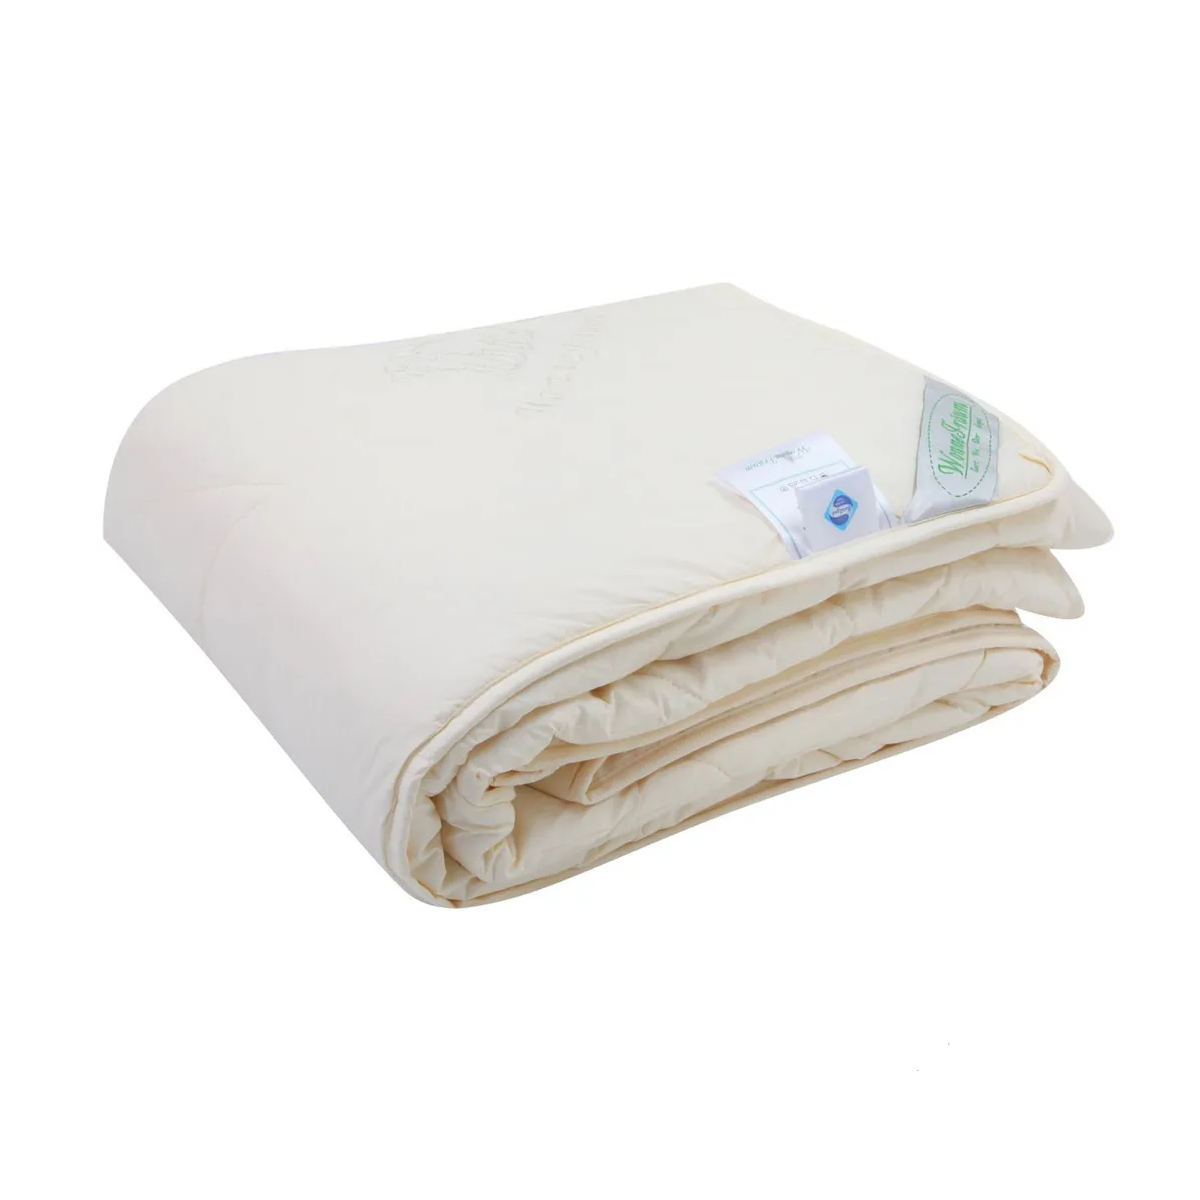 Одеяло шерстяное Wonne Traum кремовое 200х220 см (2709-26245) одеяло дачное утепленное кремовый р 200х220